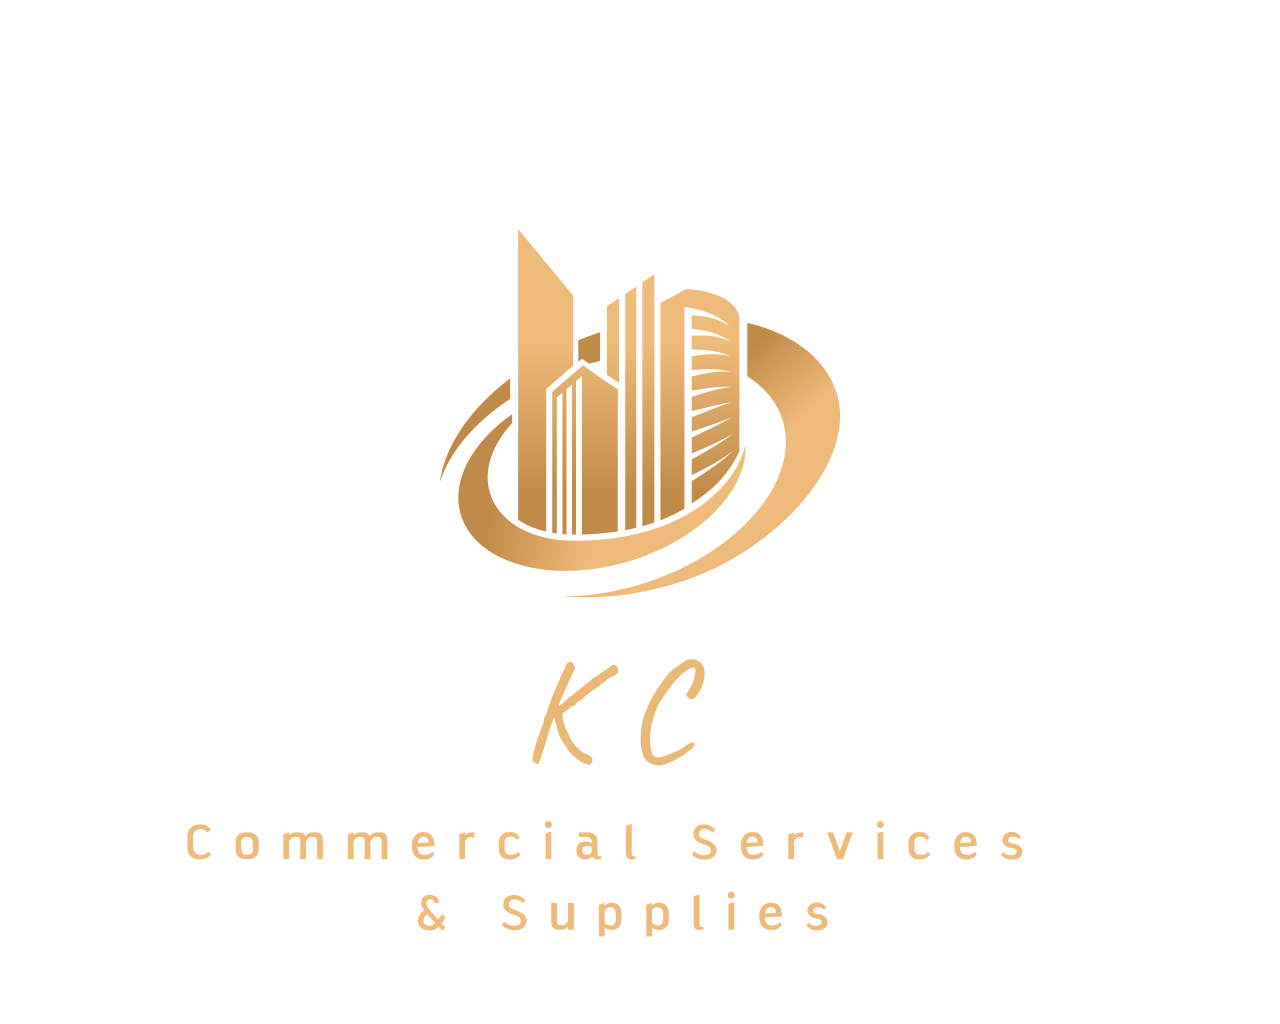 KC commercial services & supplie